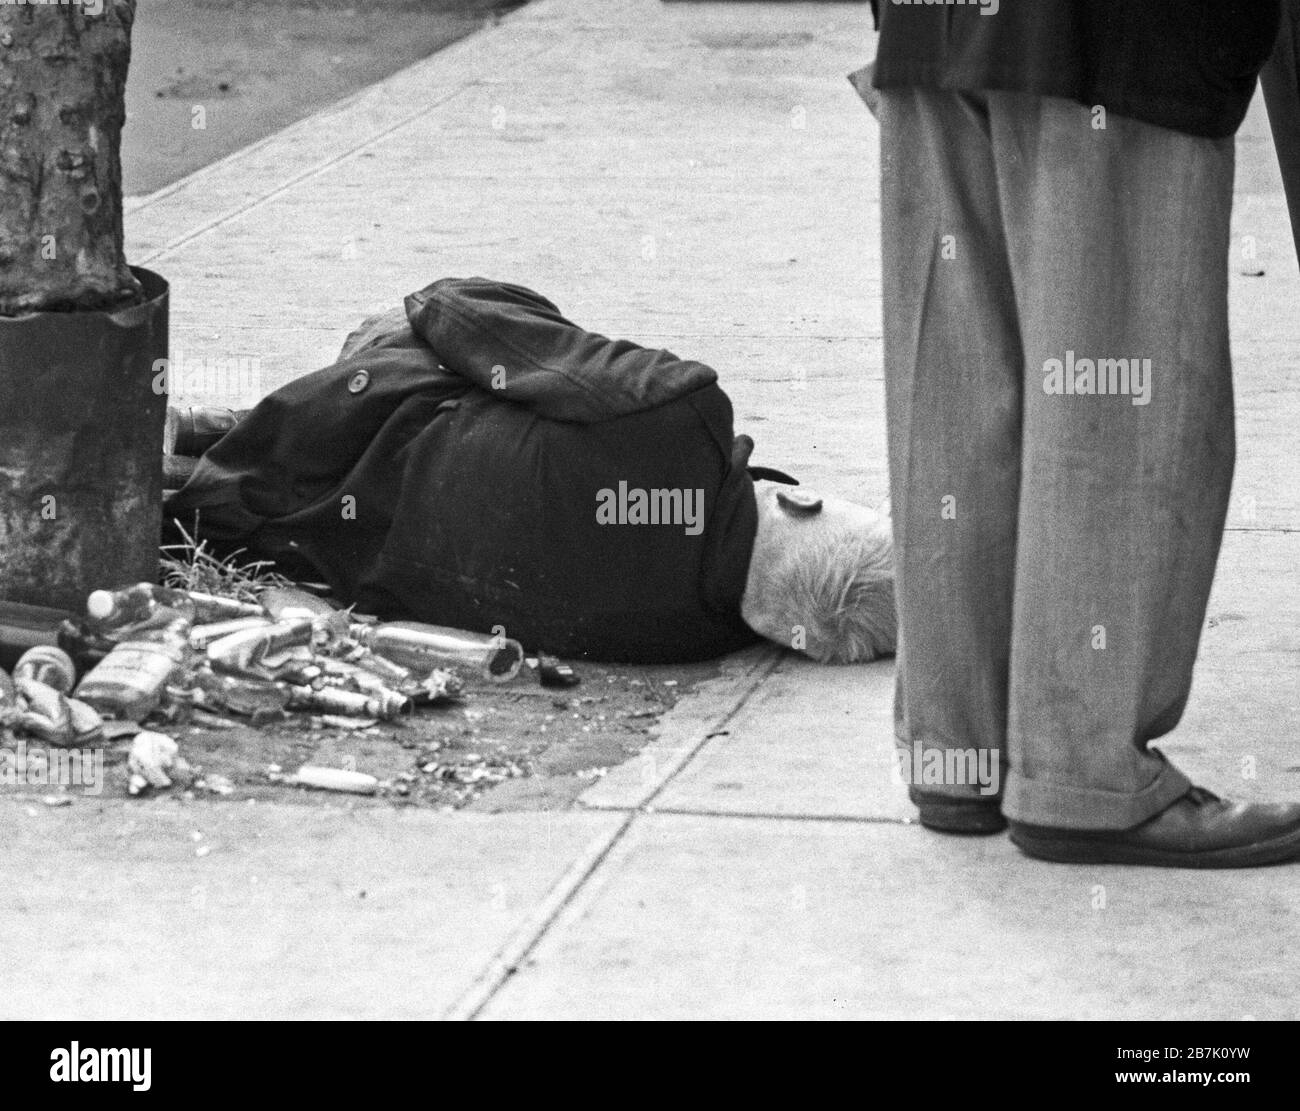 Juillet 1970, film image de l'alcoolique ivre dans la rue de New York City avec un autre homme debout près de lui dans la vie quotidienne. Banque D'Images